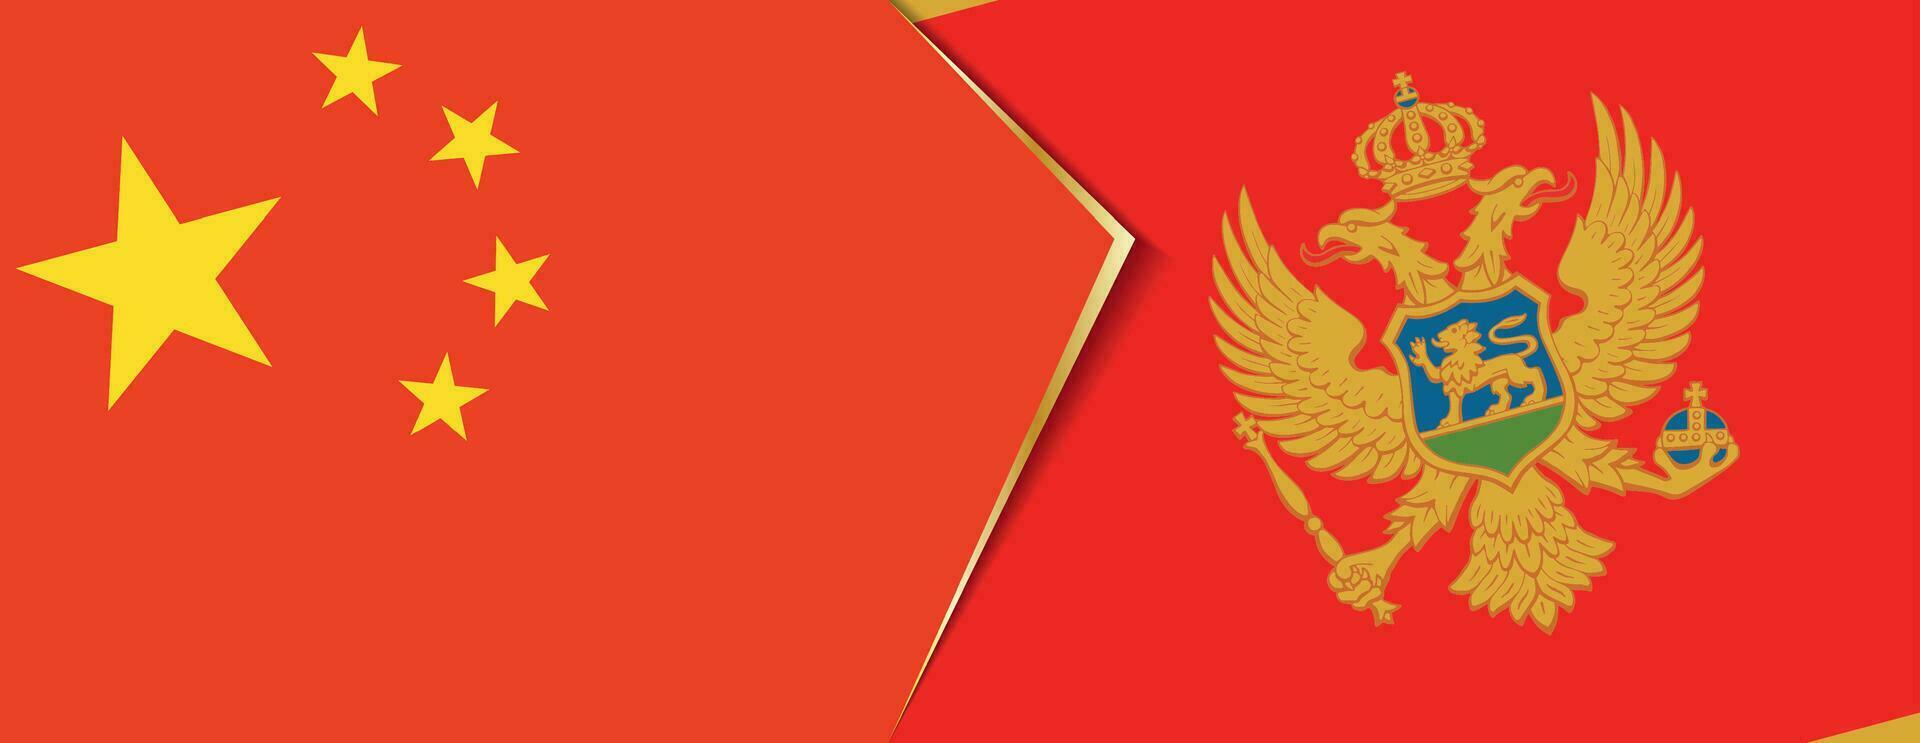 China e Montenegro bandeiras, dois vetor bandeiras.